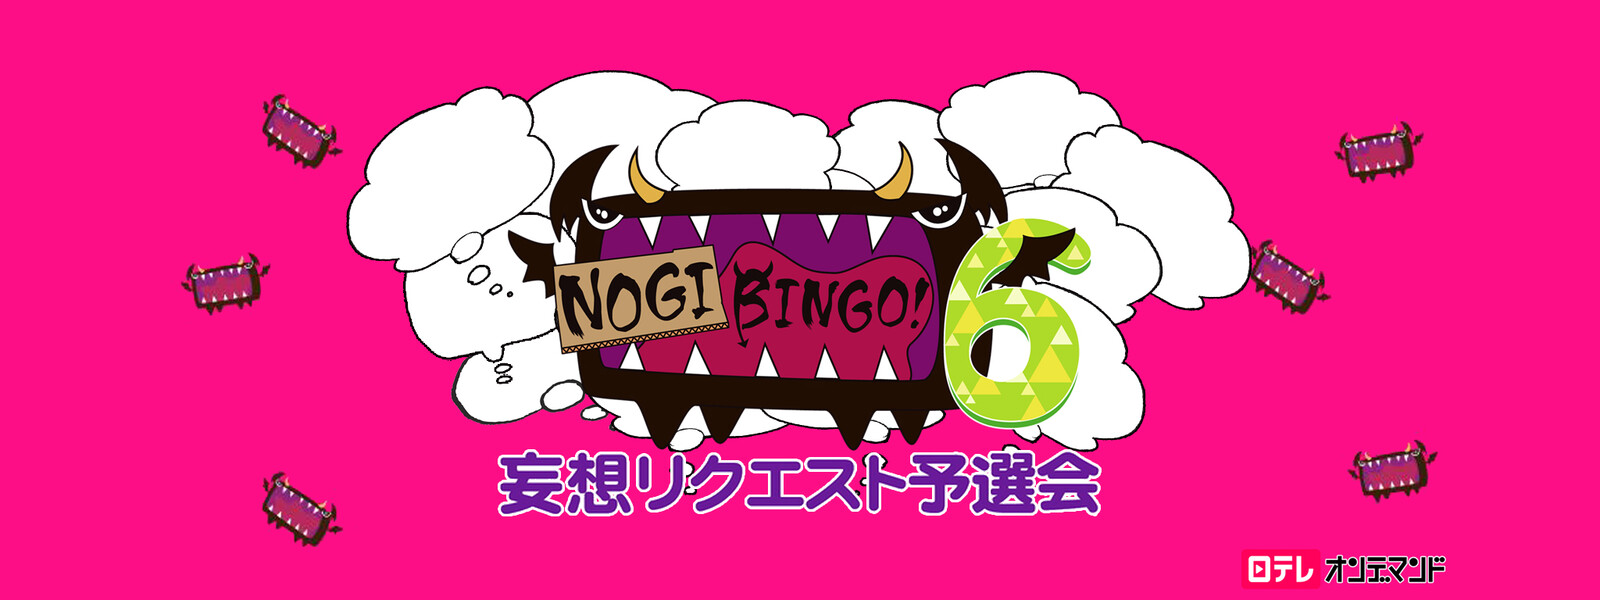 NOGIBINGO! 6 妄想リクエスト予選会の動画 - NOGIBINGO! 5